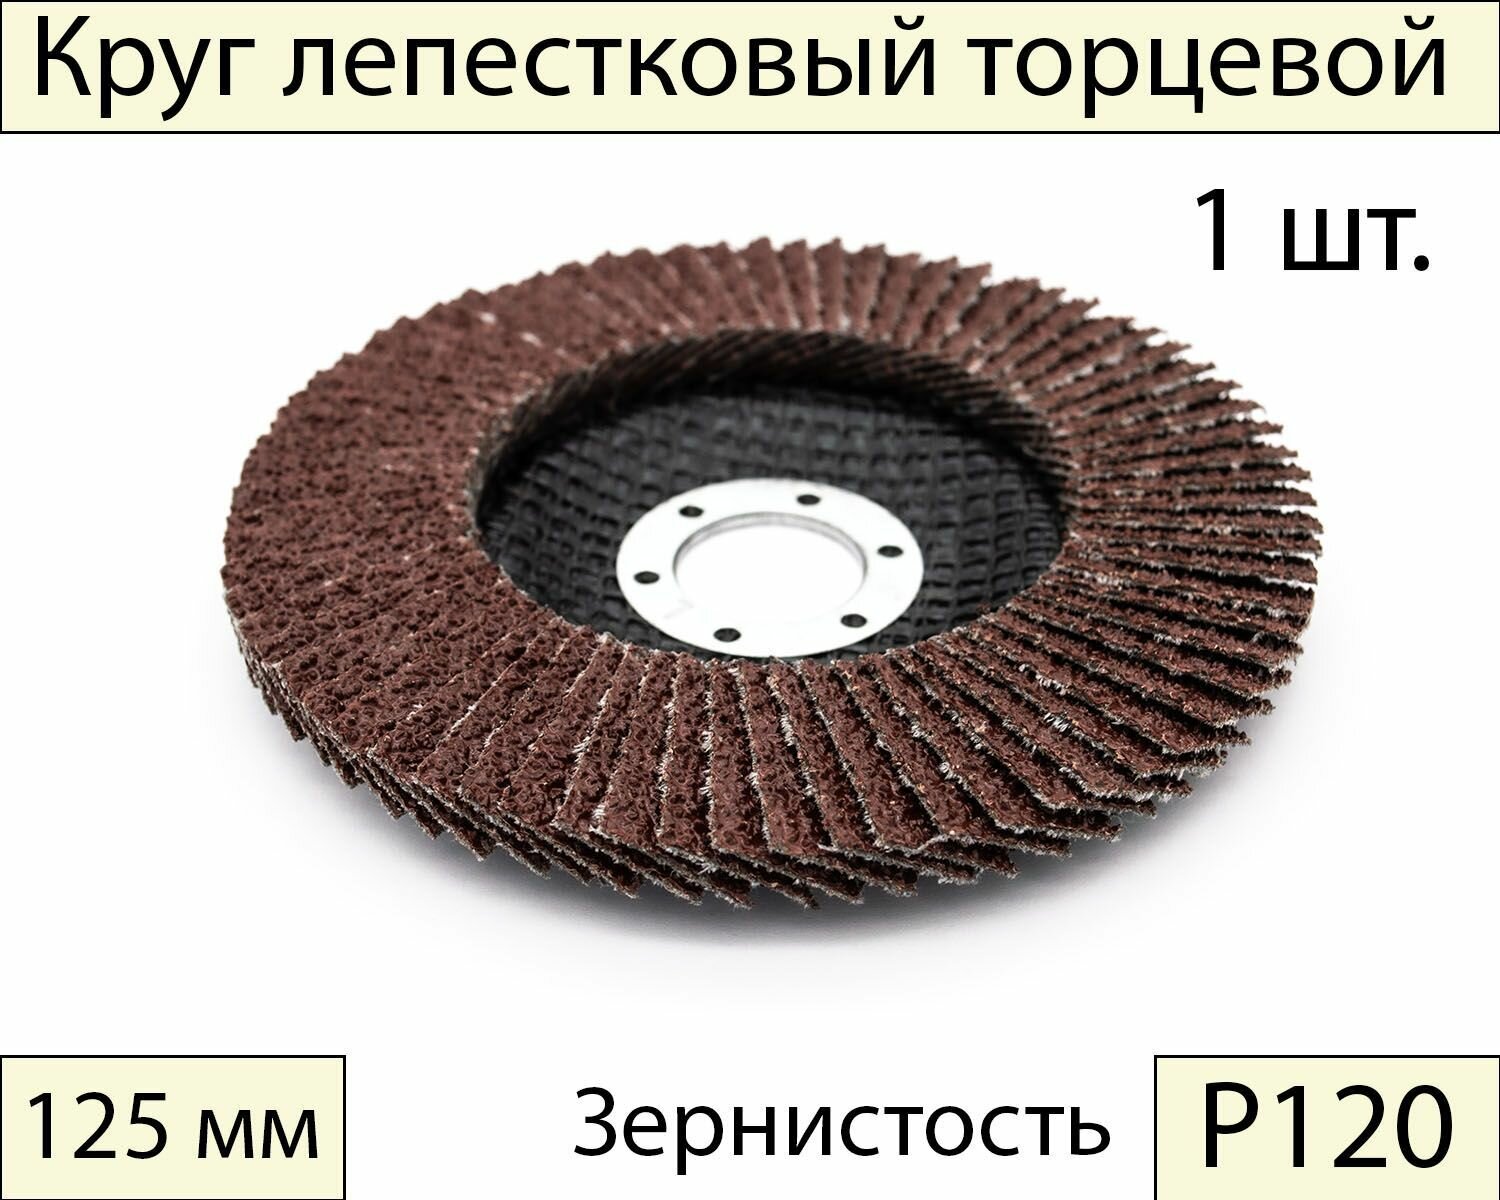 Круги шлифовальные абразивные / лепестковый торцевой диск 125 мм, Р120, 1 шт.